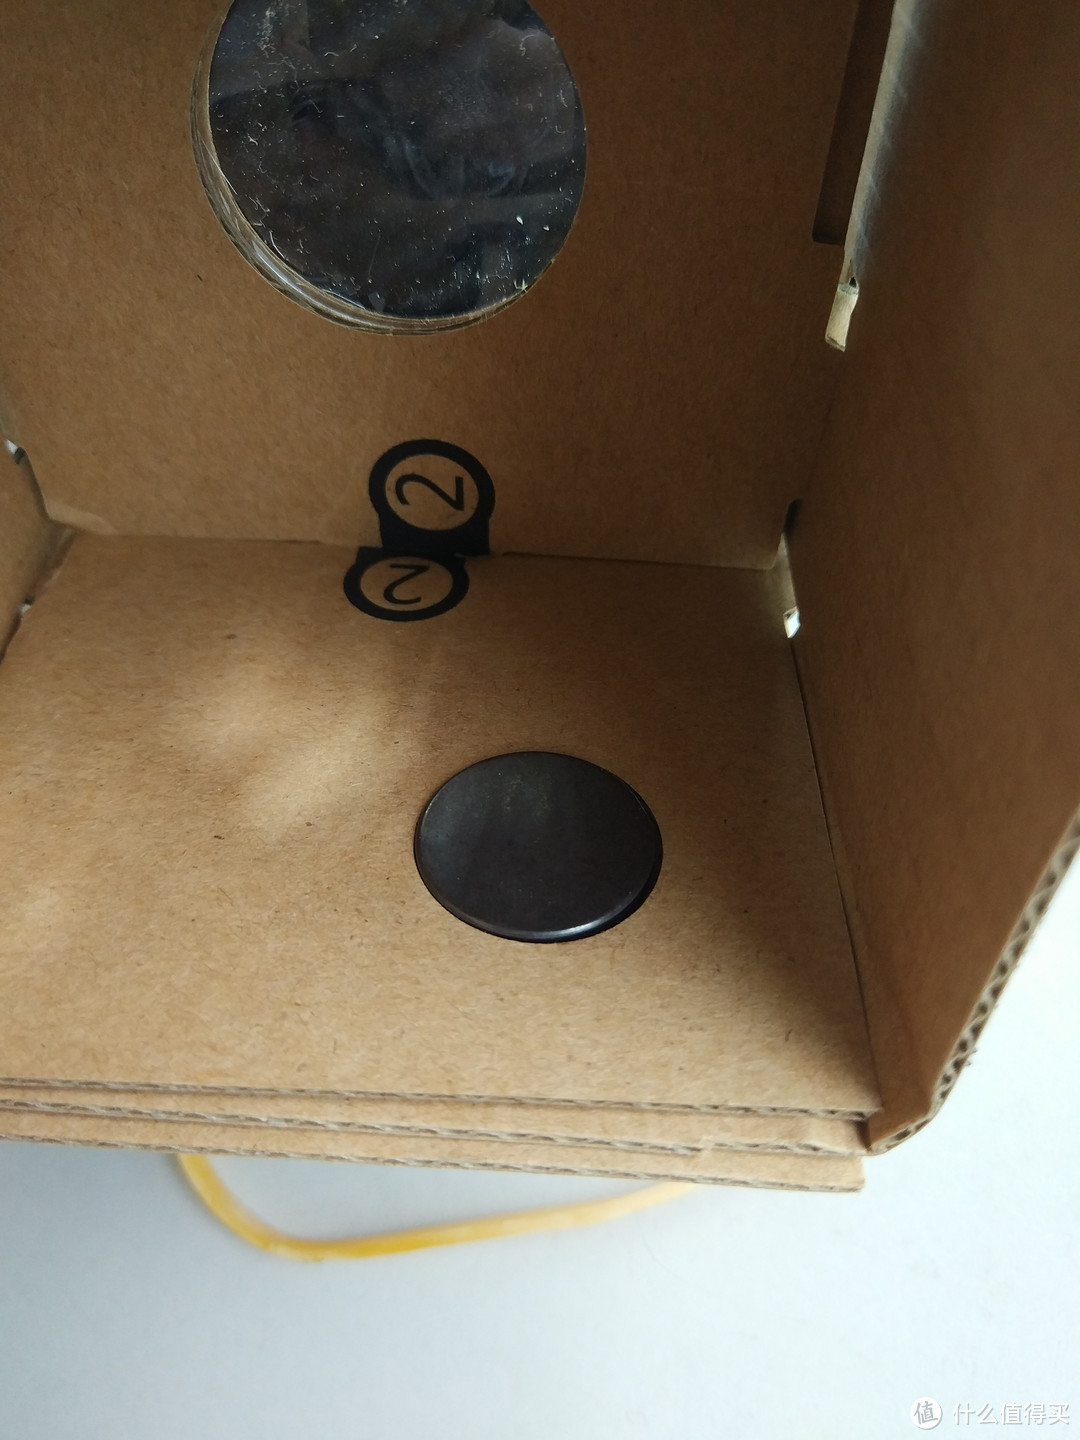 老男孩的专属玩具—VR纸盒开箱评测（详细组装实图）